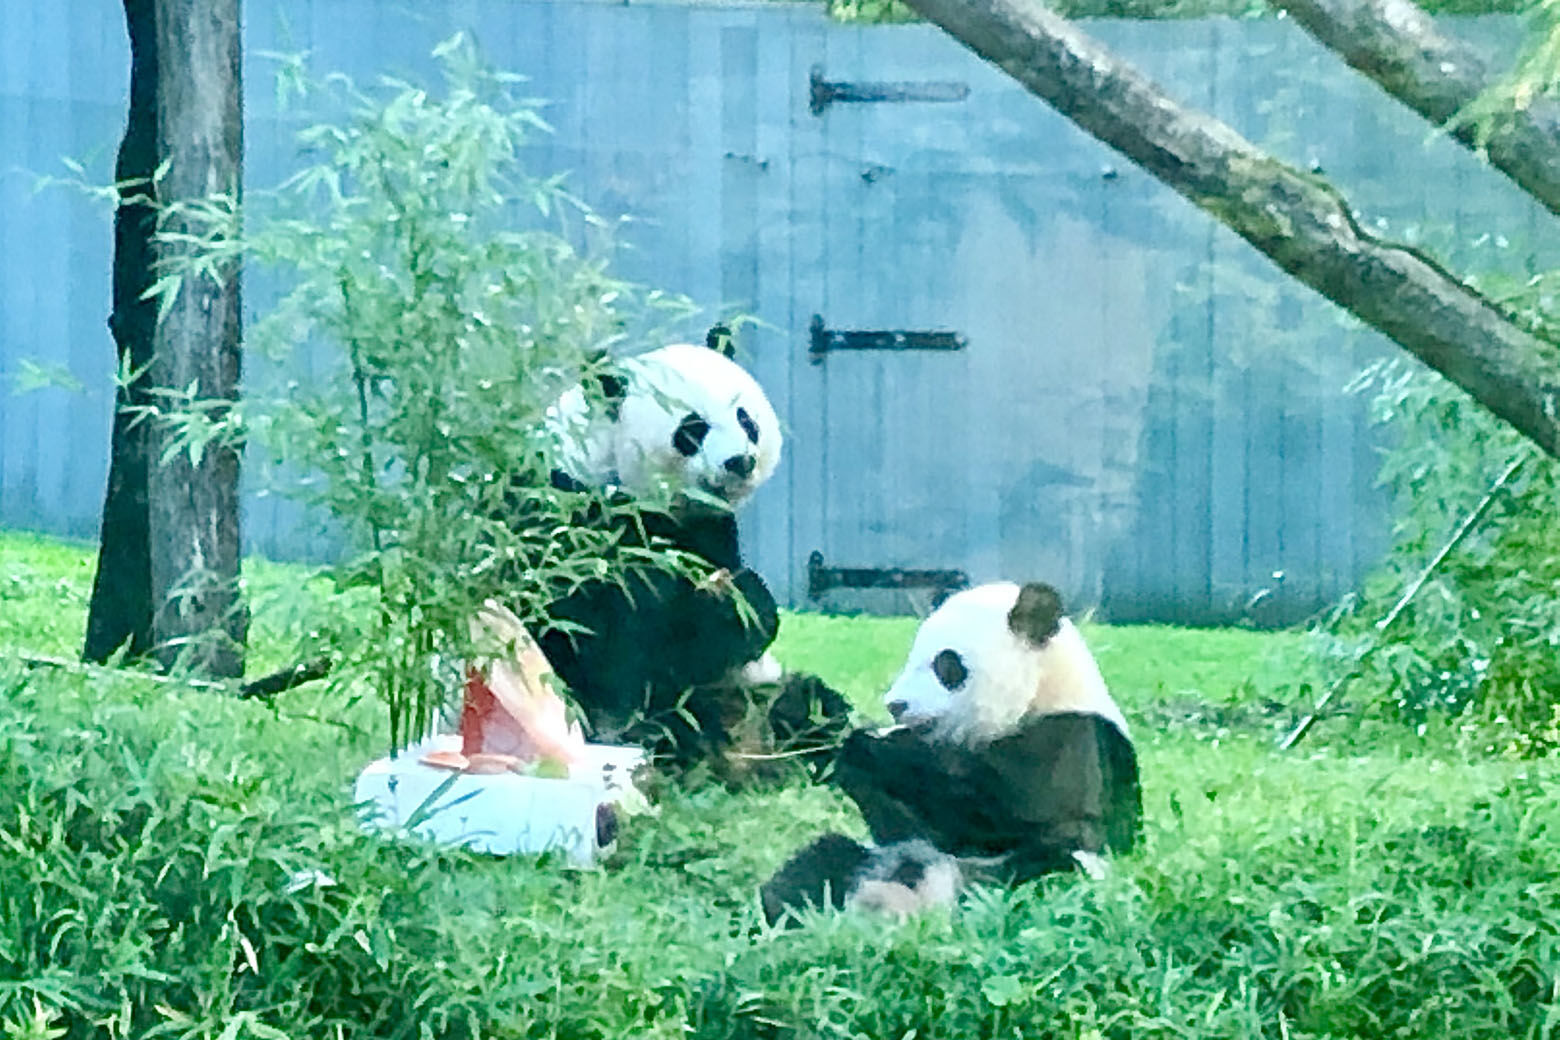 Two pandas